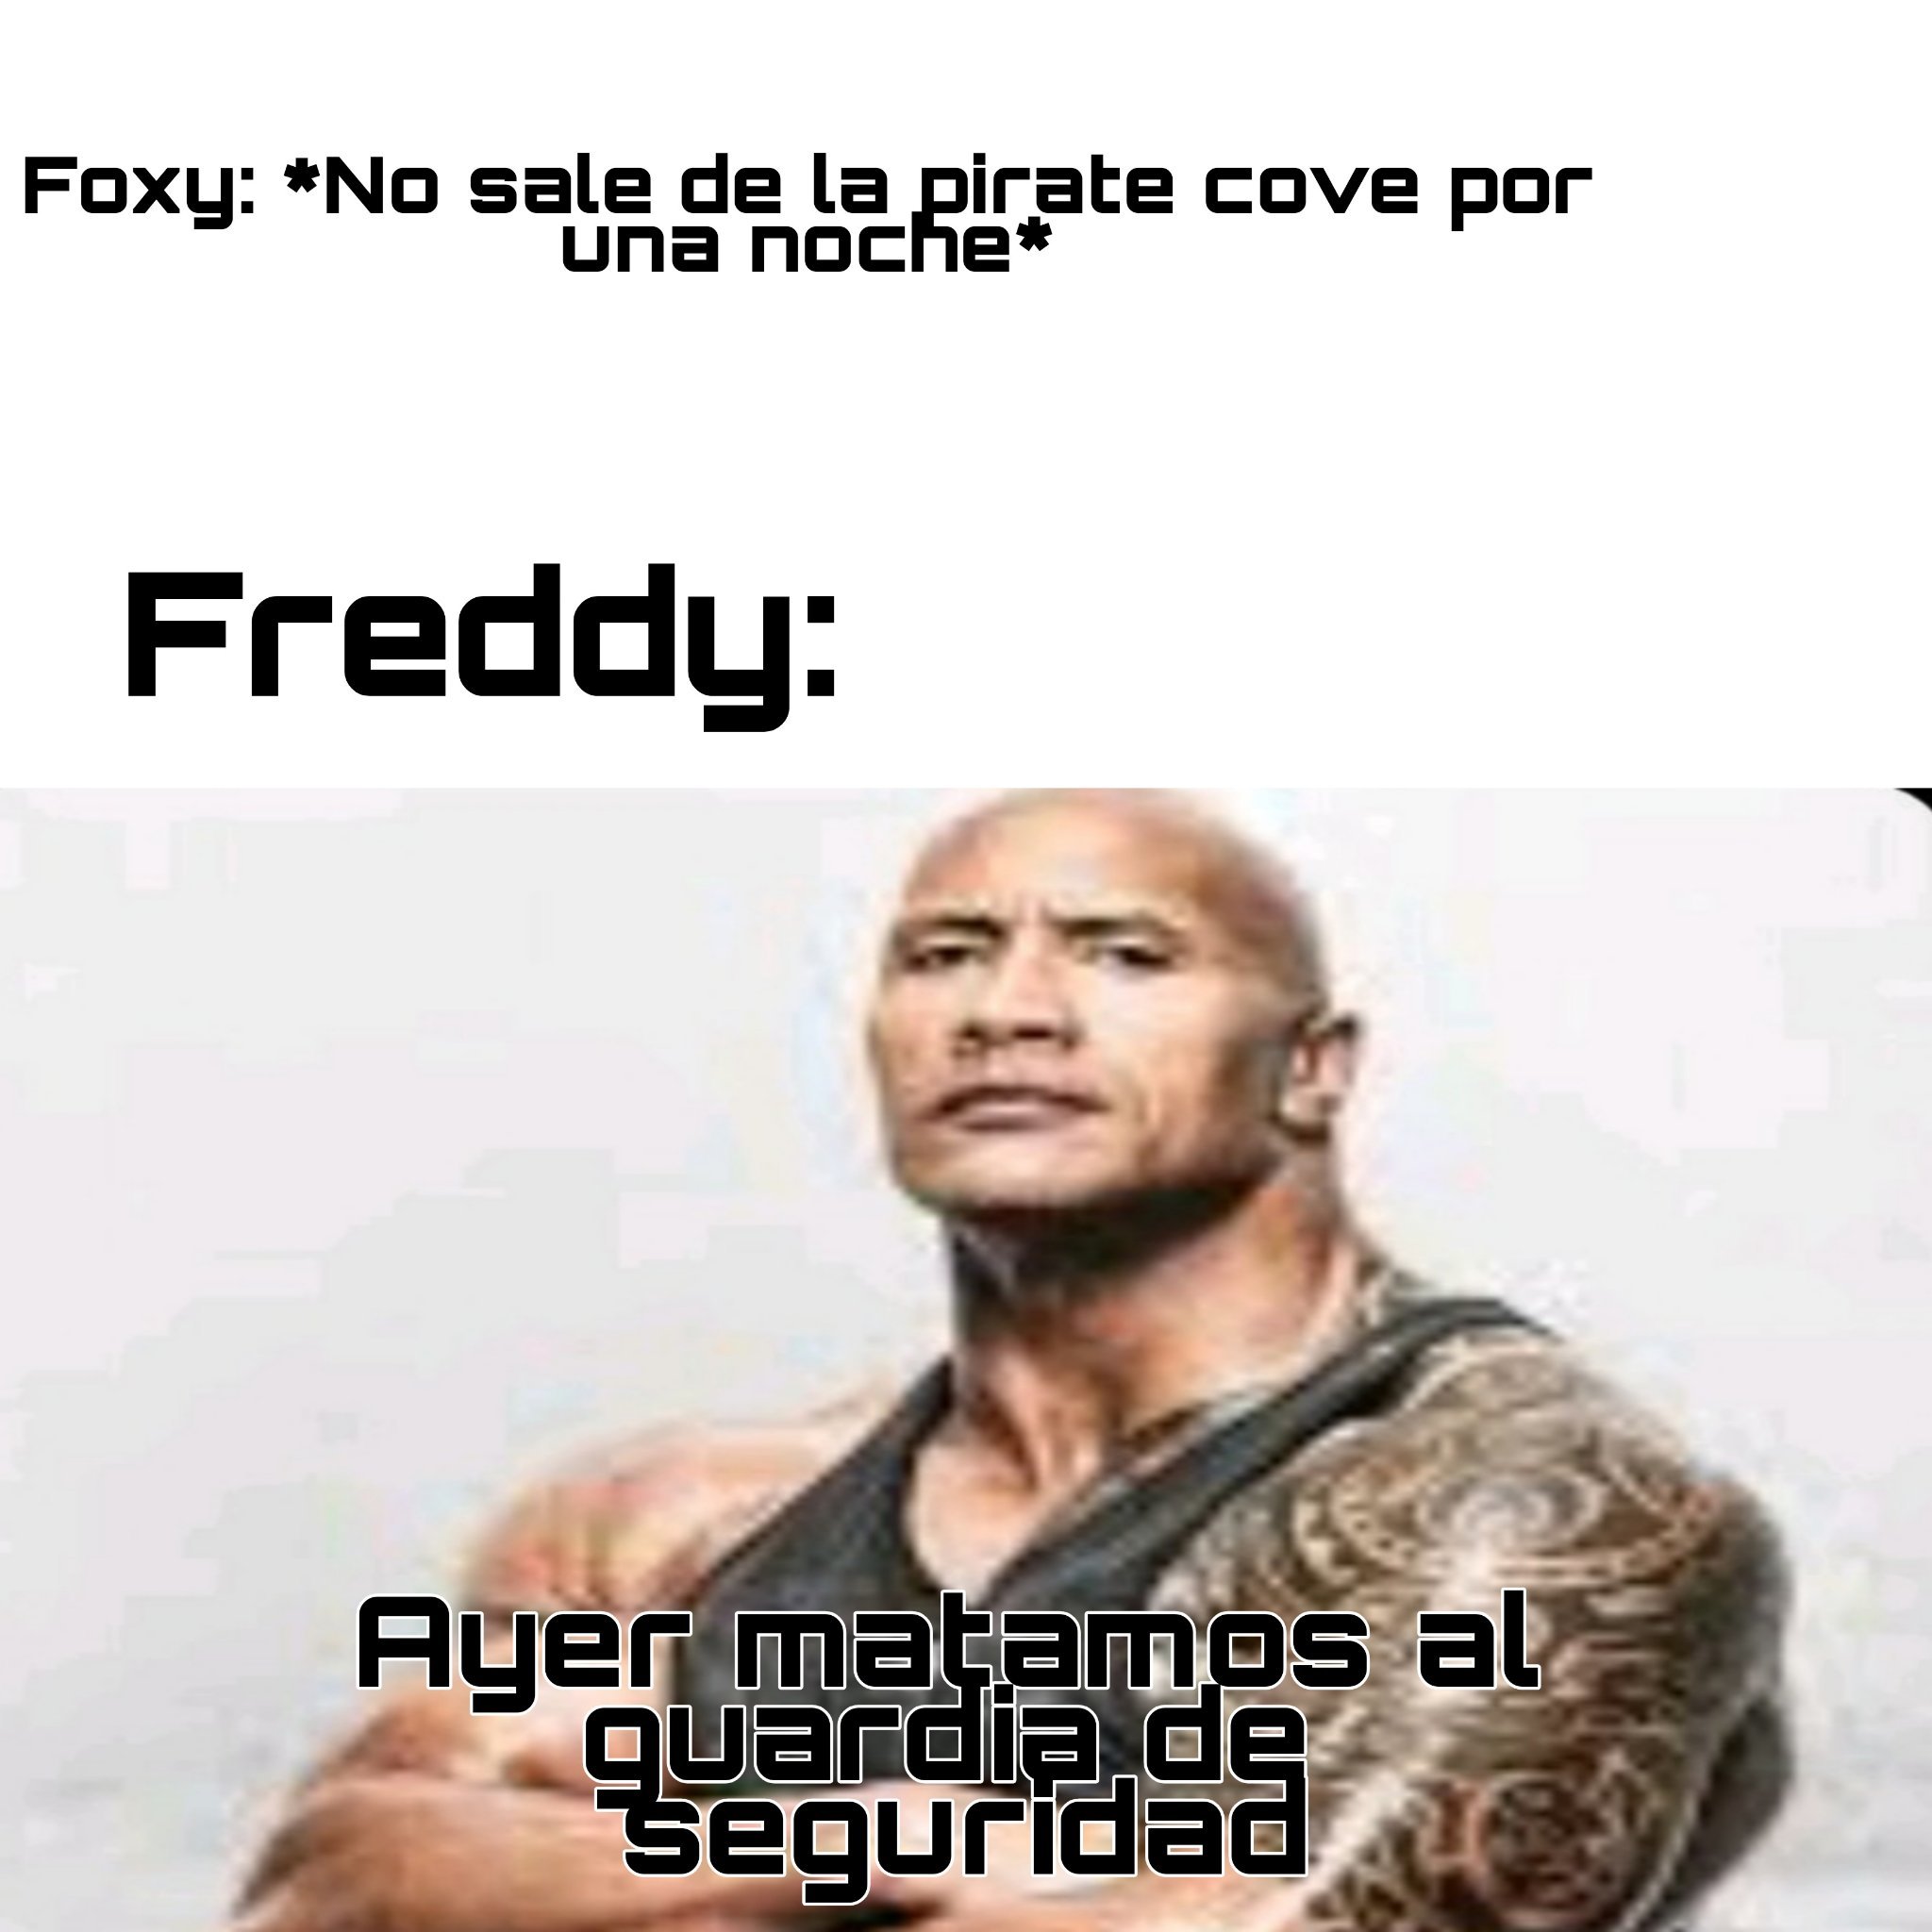 Todo un capo el Freddy - meme